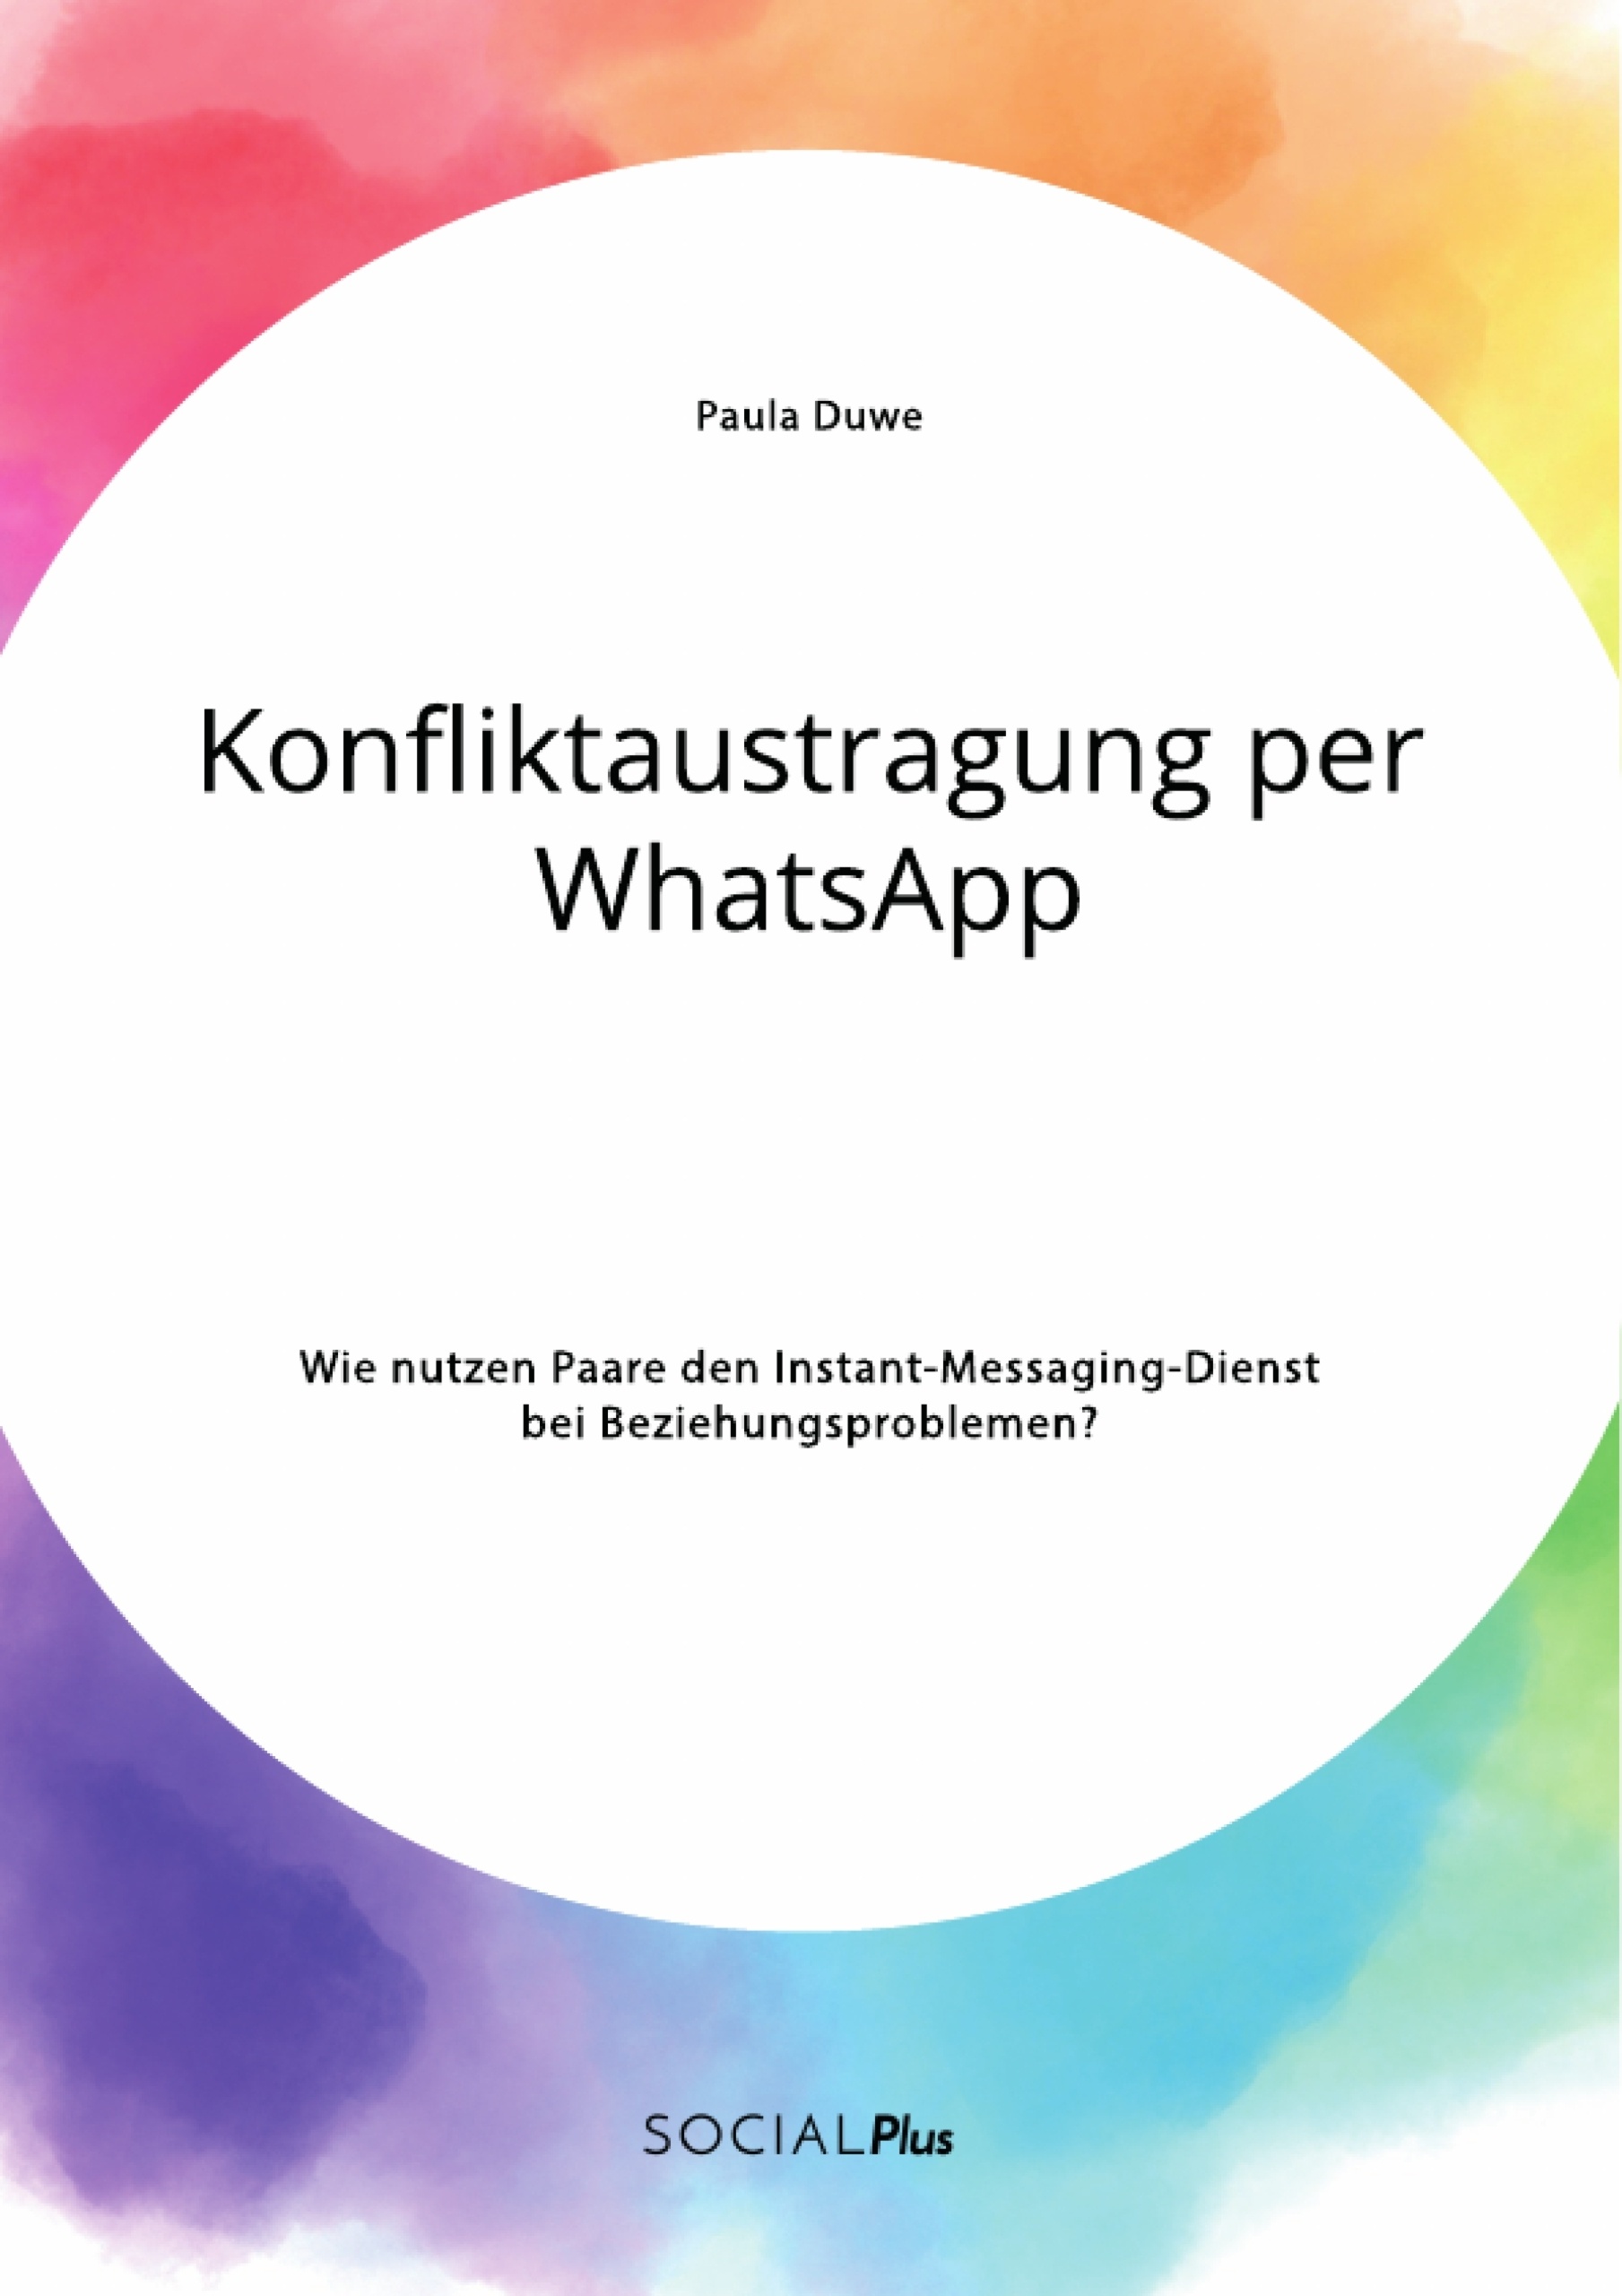 Whatsapp ausgenutzt sprüche 80 Sprüche